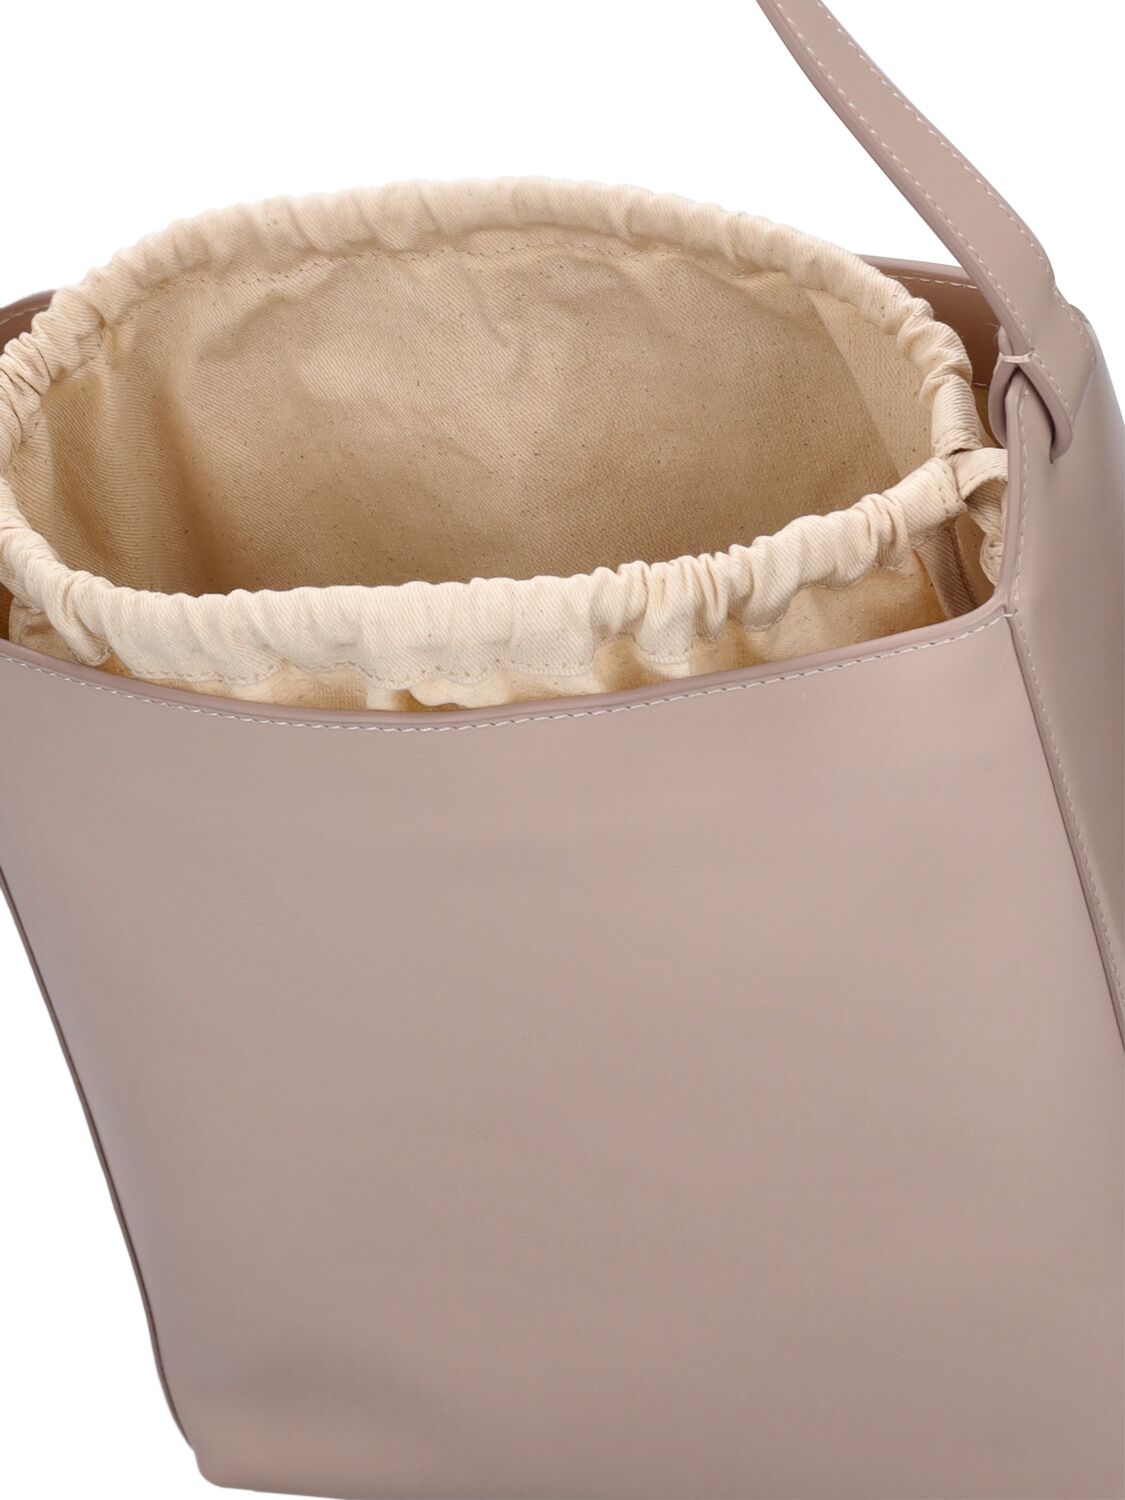 Shop Apc Virginie Smooth Leather Shoulder Bag In Moon Grey